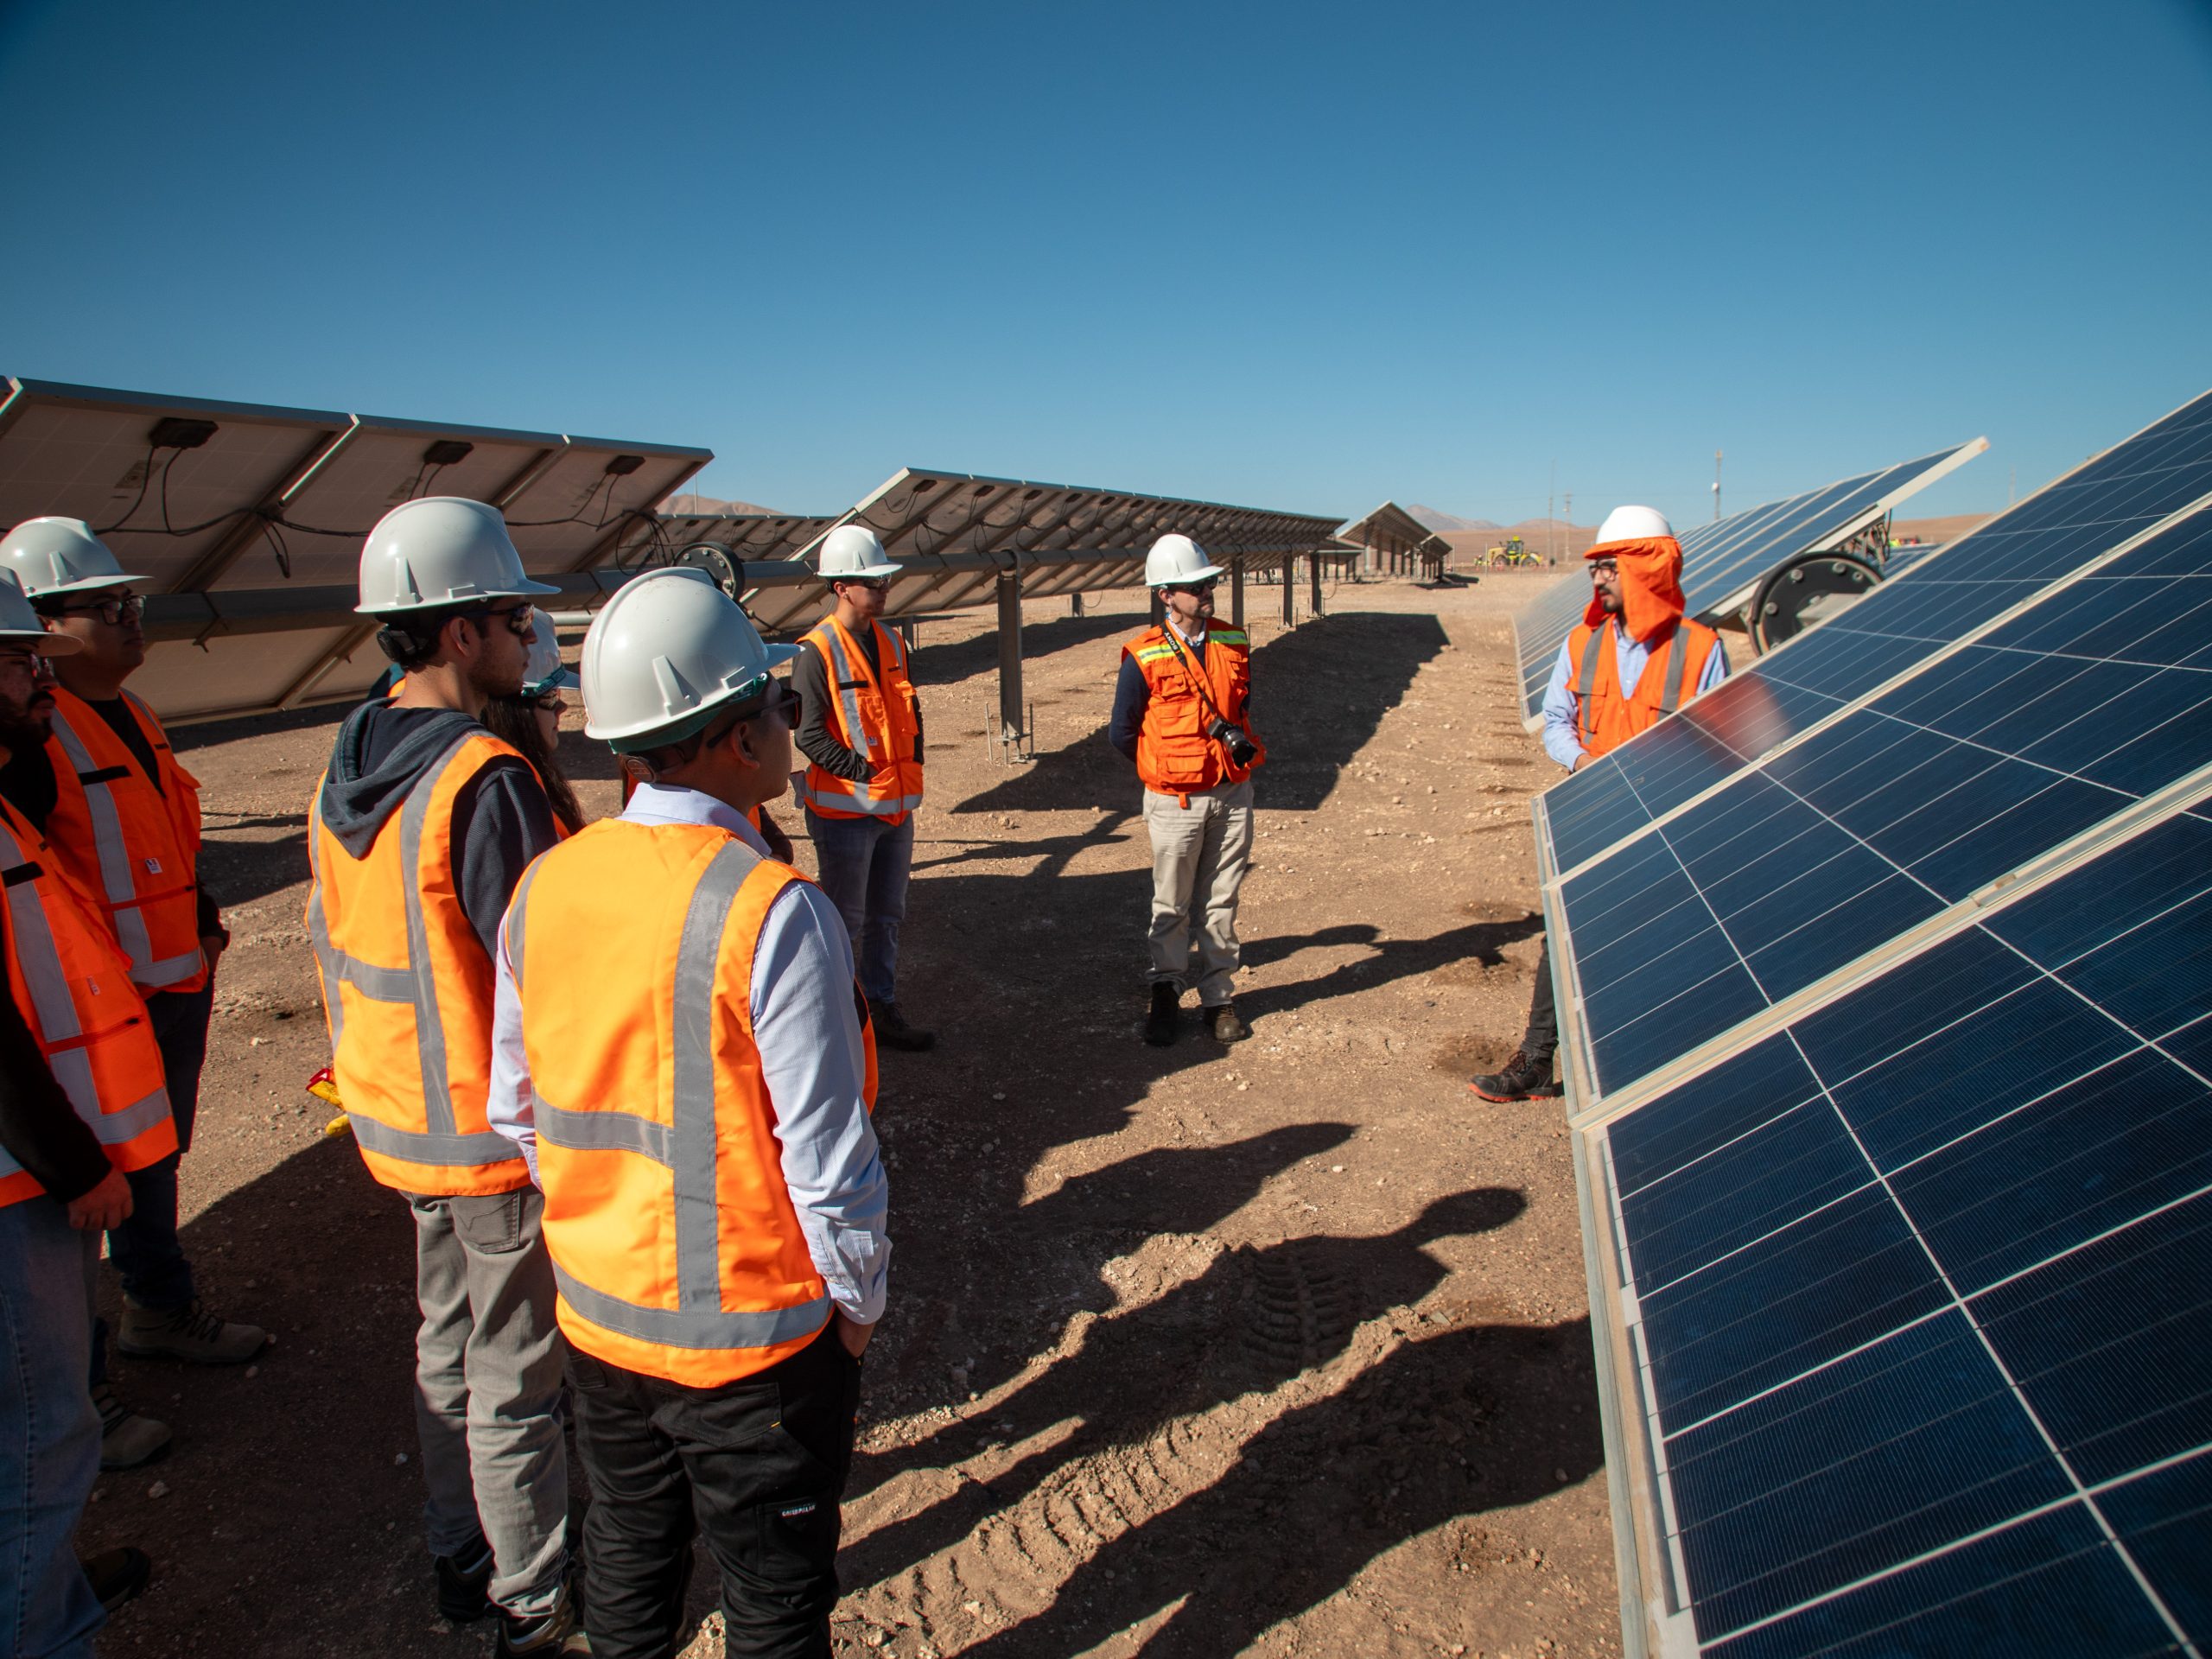 Avanza tecnología nacional para digitalizar plantas solares fotovoltaicas